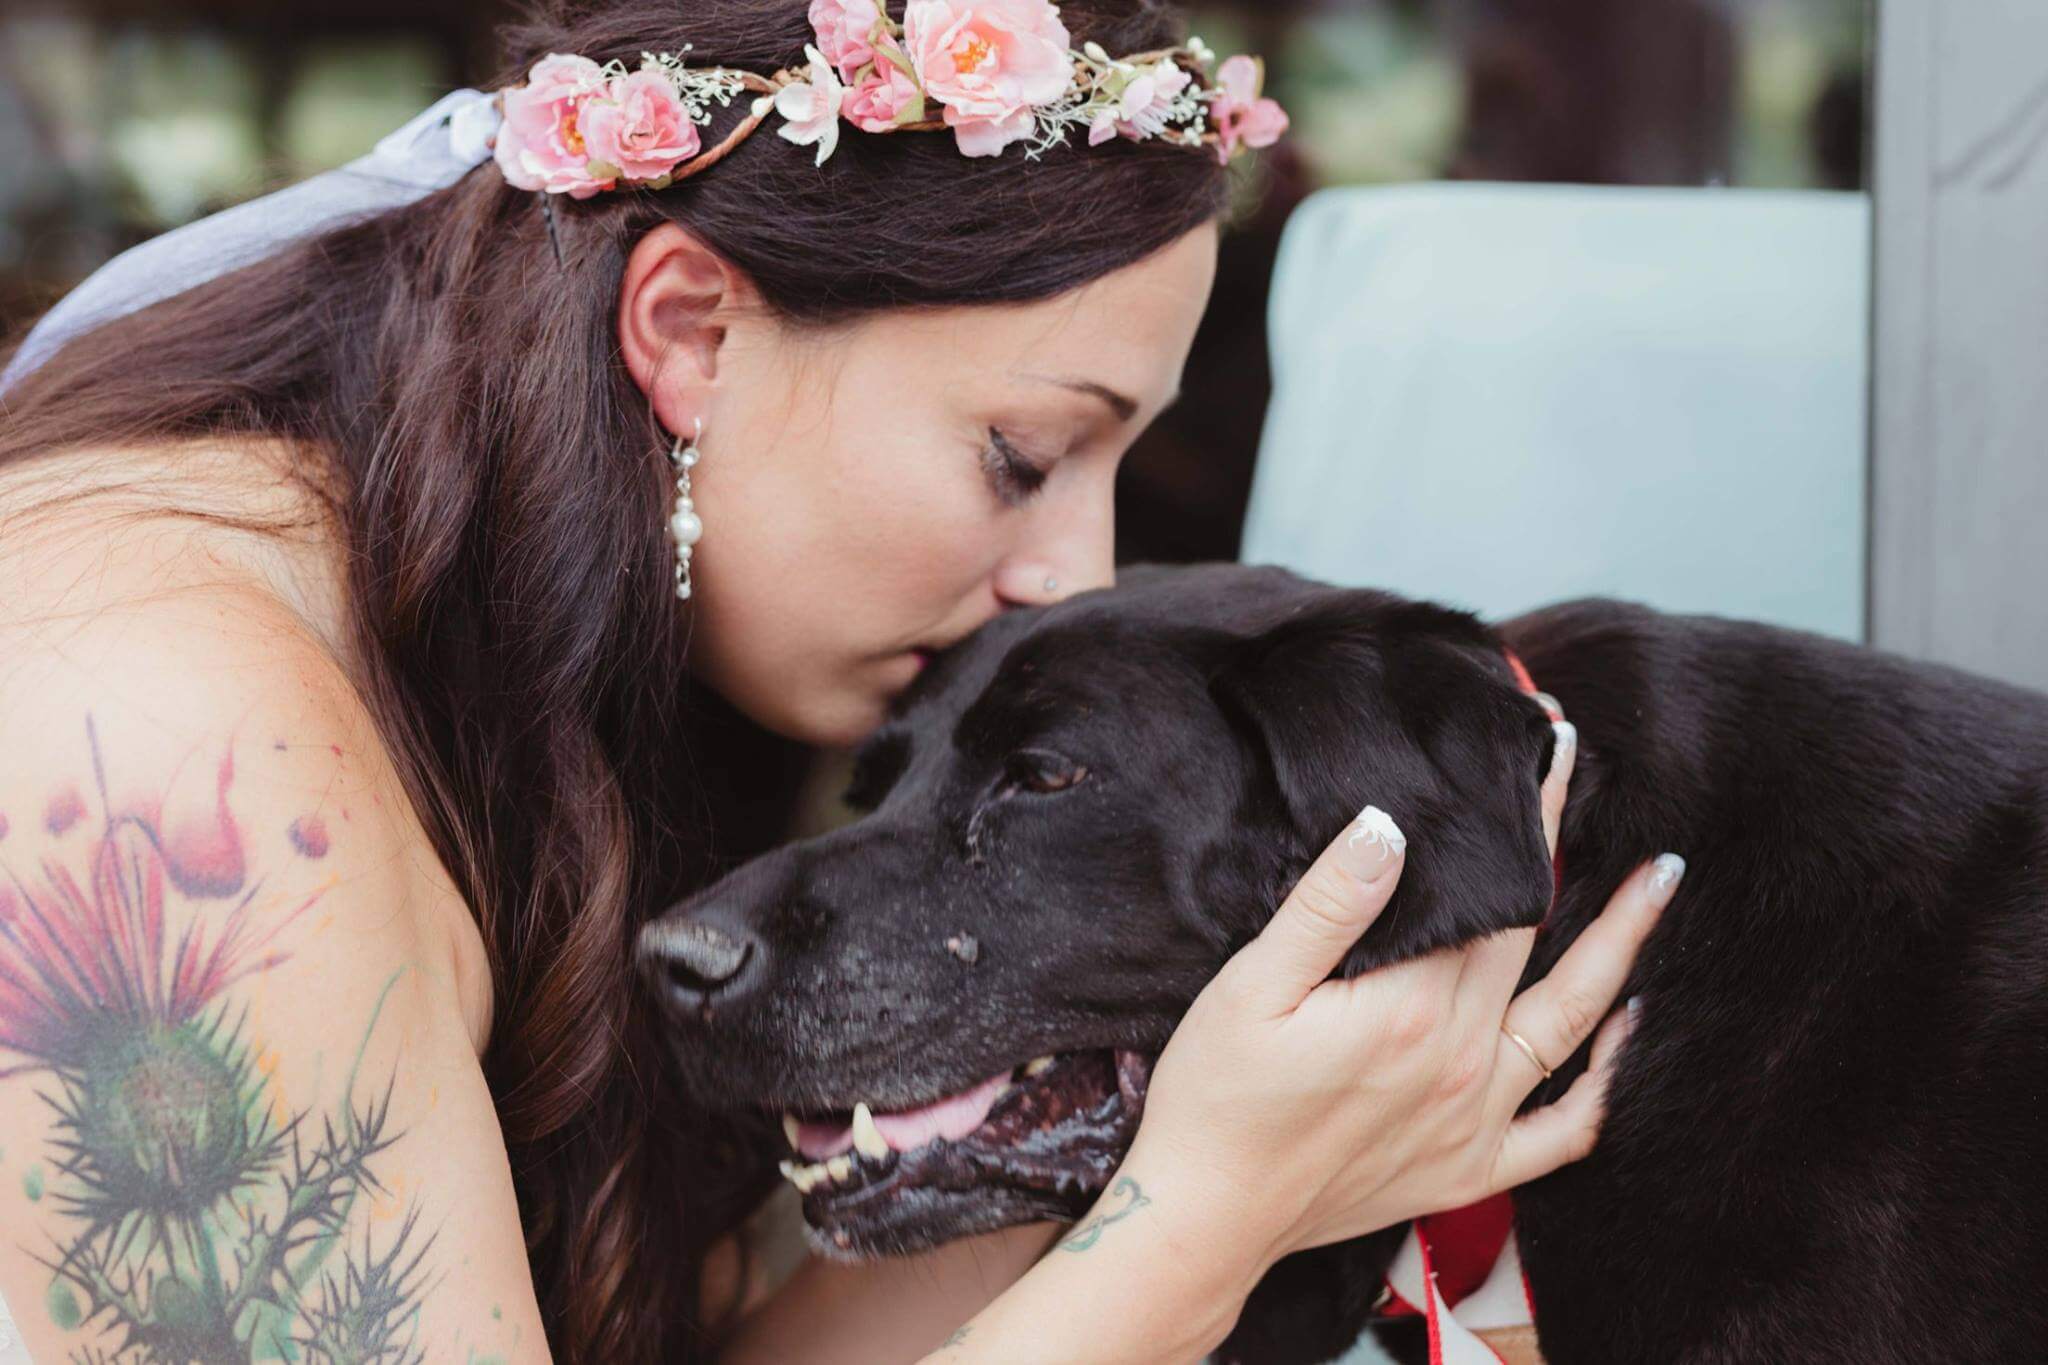 inspiringlife.pt - Cachorro com doença em fase terminal acompanha dona no seu casamento